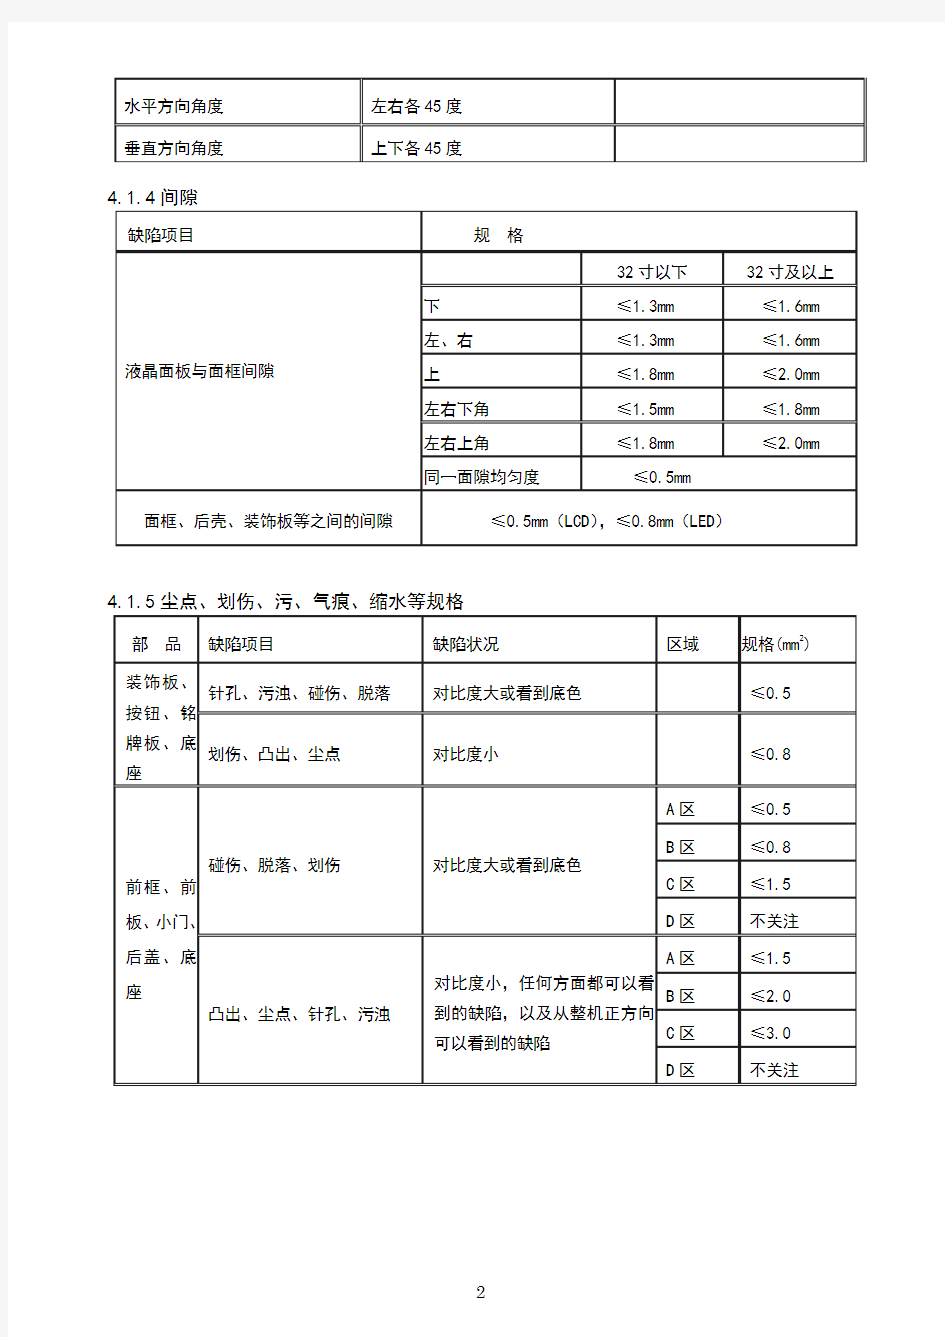 清华同方OEM产品标准(试行版)